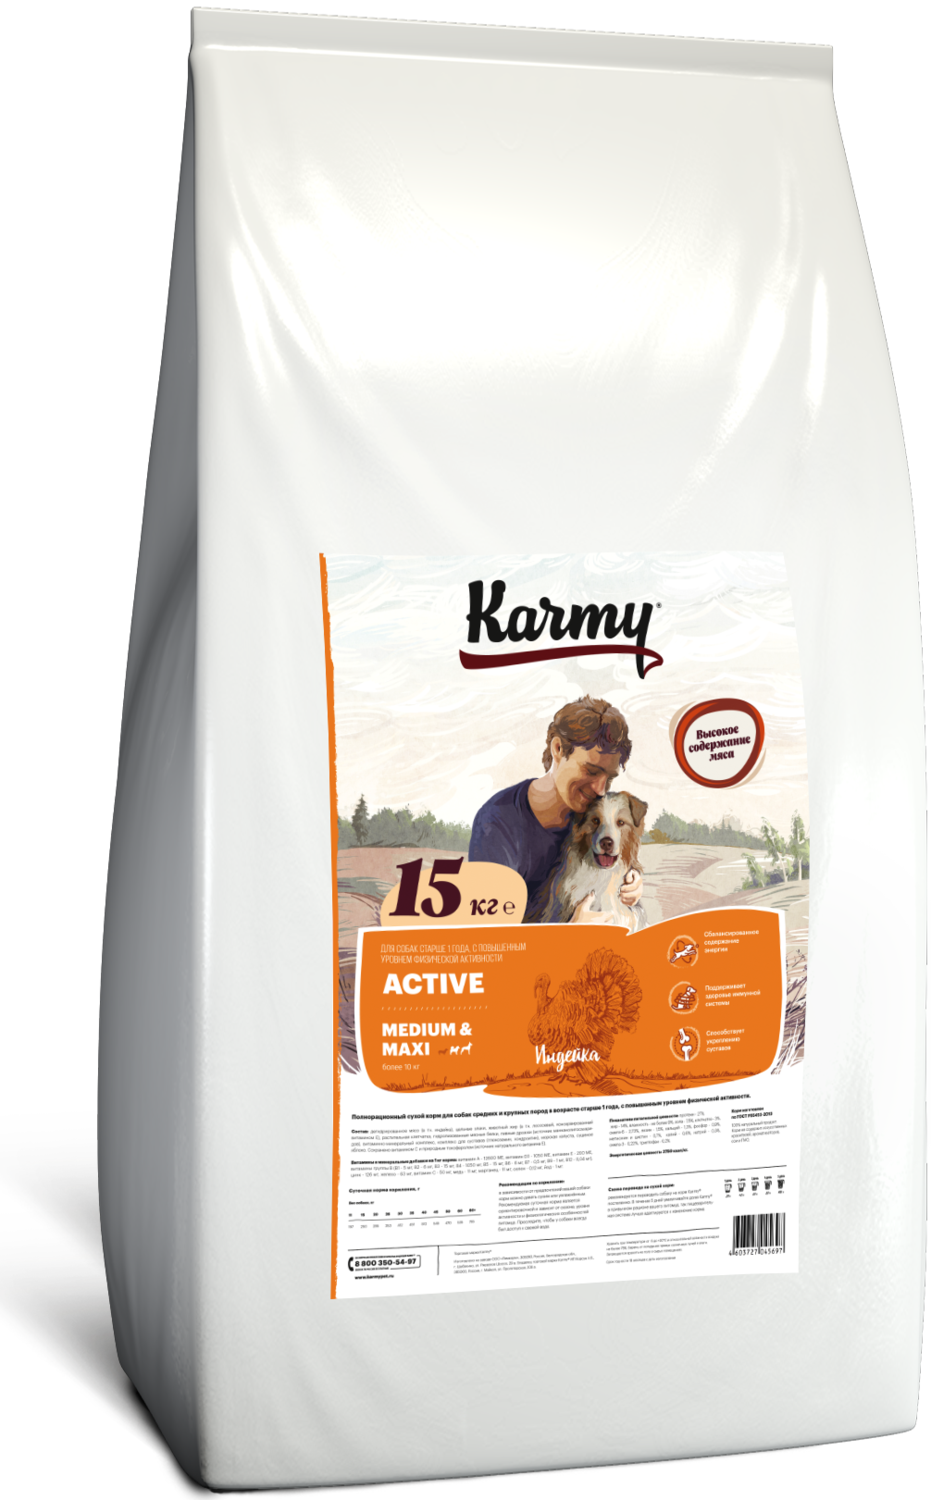 ​Карми Active Medium&Maxi, Индейка​.
Сухой корм для собак средних и крупных пород
в возрасте старше 1 года, с повышенным уровнем физической активности. 15кг.